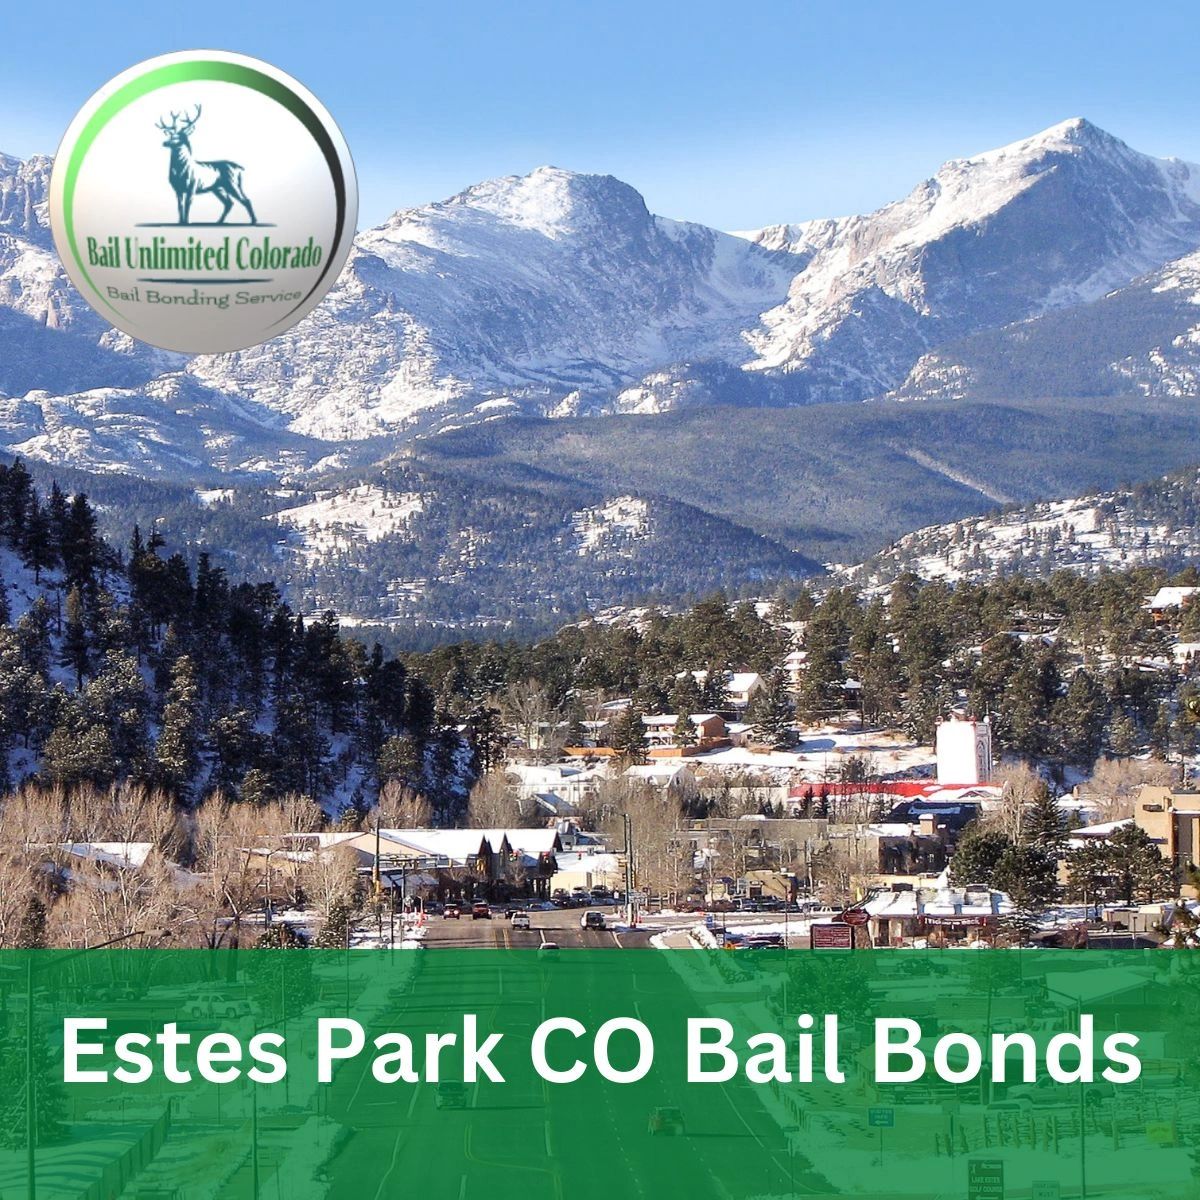 Estes Park CO Bail Bonds LOGO Bail Unlimited Colorado IMAGE Estes Park Twin Peaks & Town